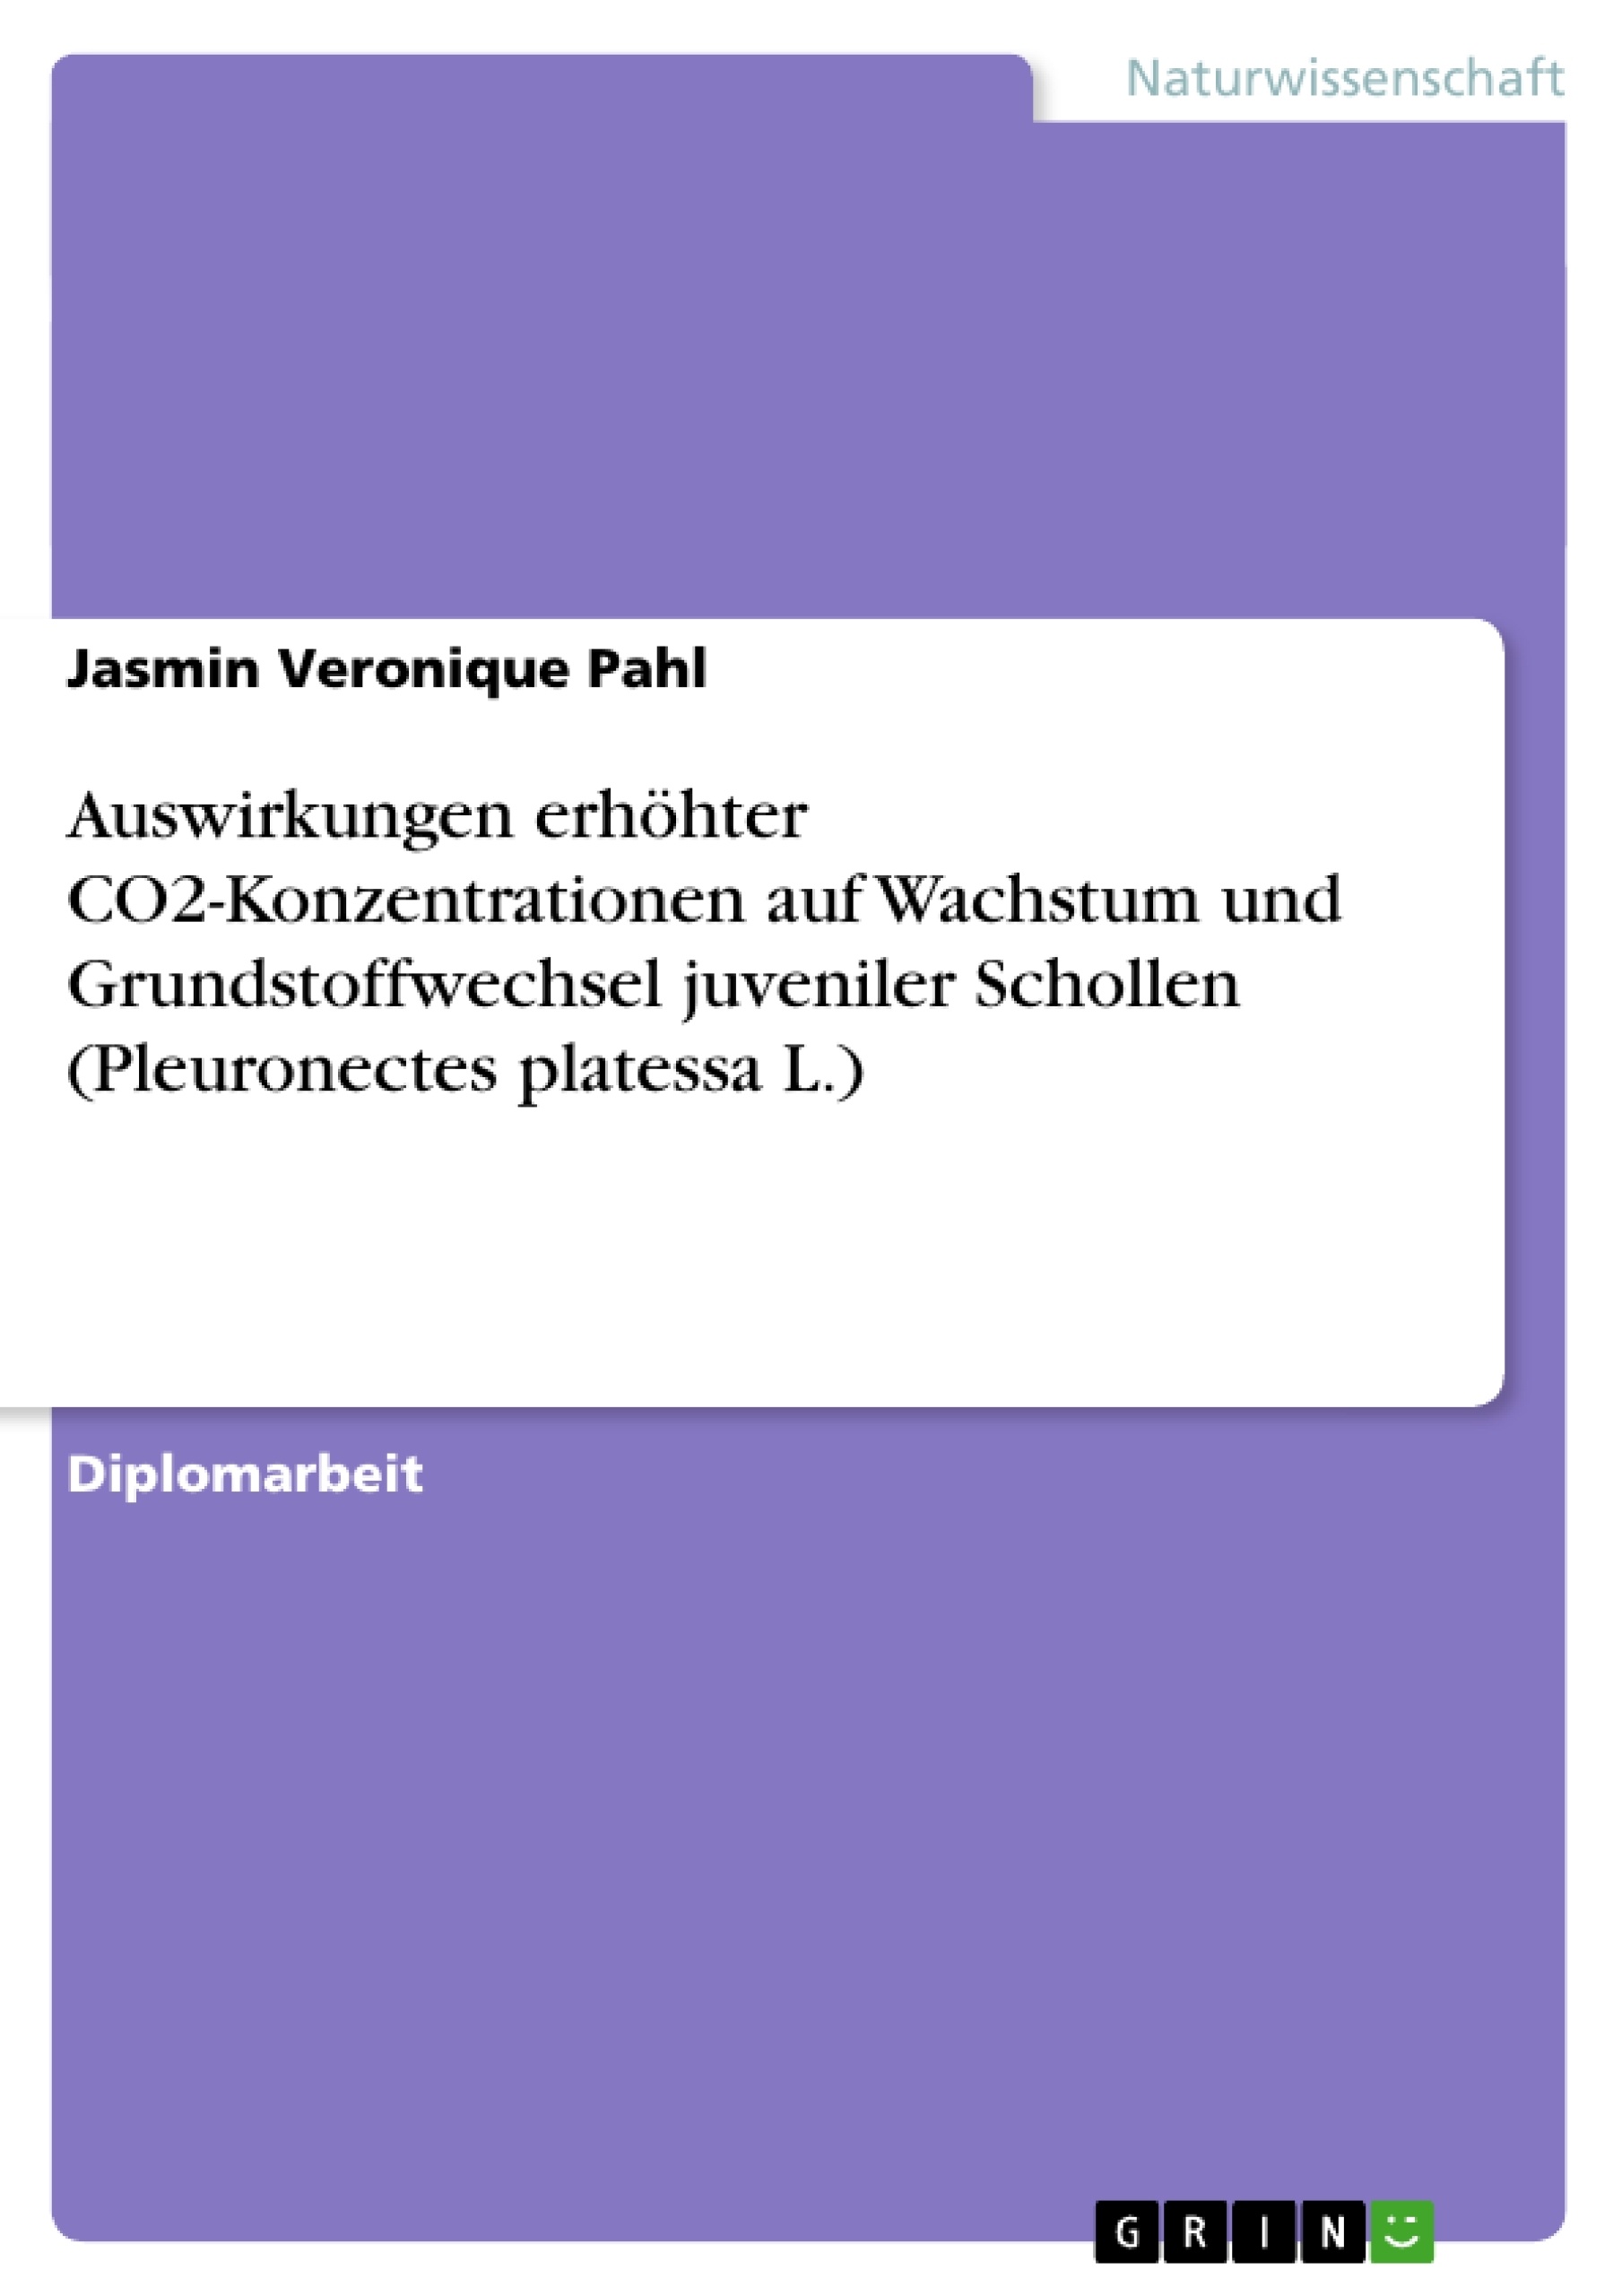 Title: Auswirkungen erhöhter CO2-Konzentrationen auf Wachstum und Grundstoffwechsel juveniler Schollen (Pleuronectes platessa L.)